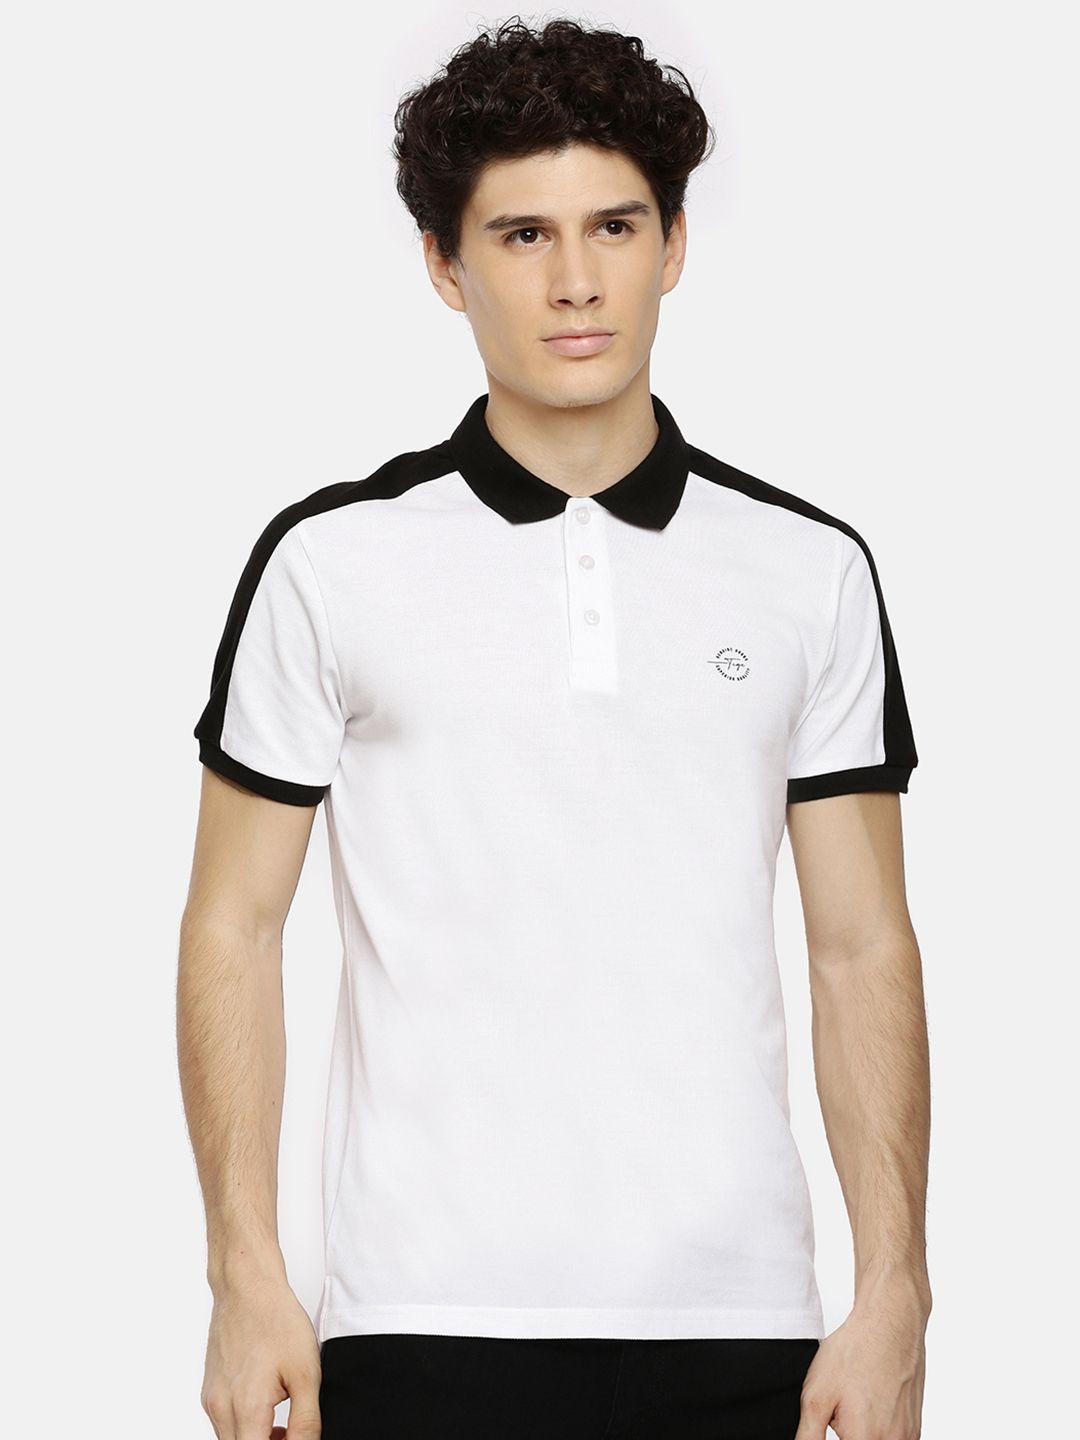 the indian garage co men white & black colourblocked polo collar t-shirt